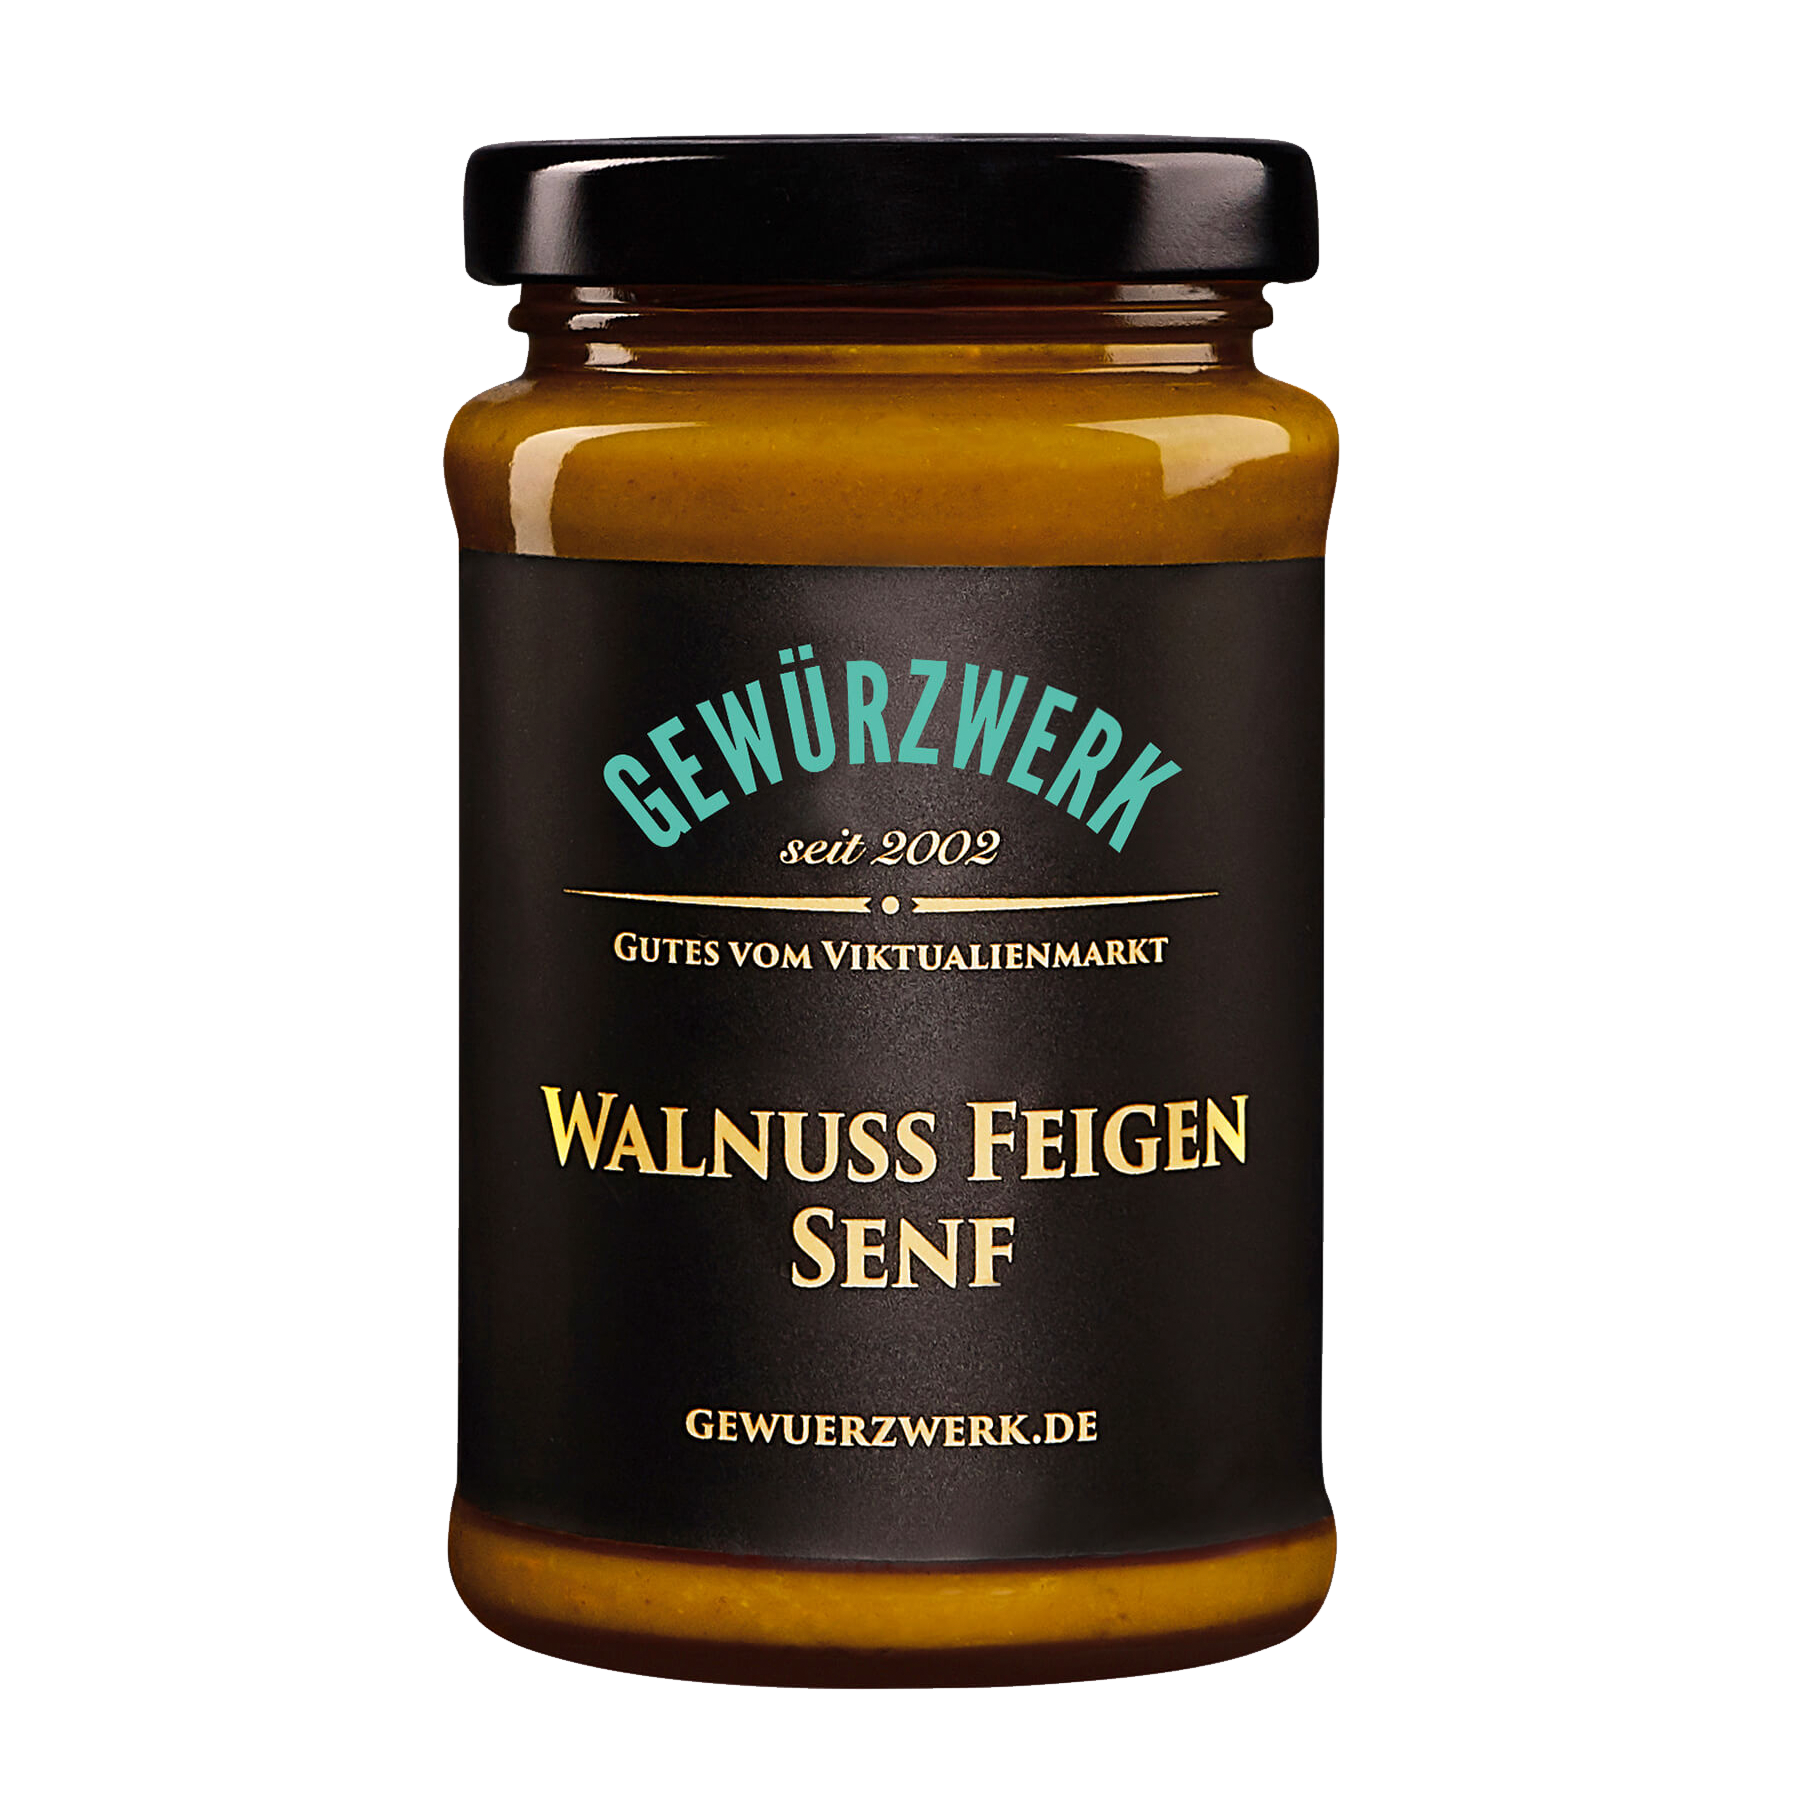 Walnuss-Feigen Senf